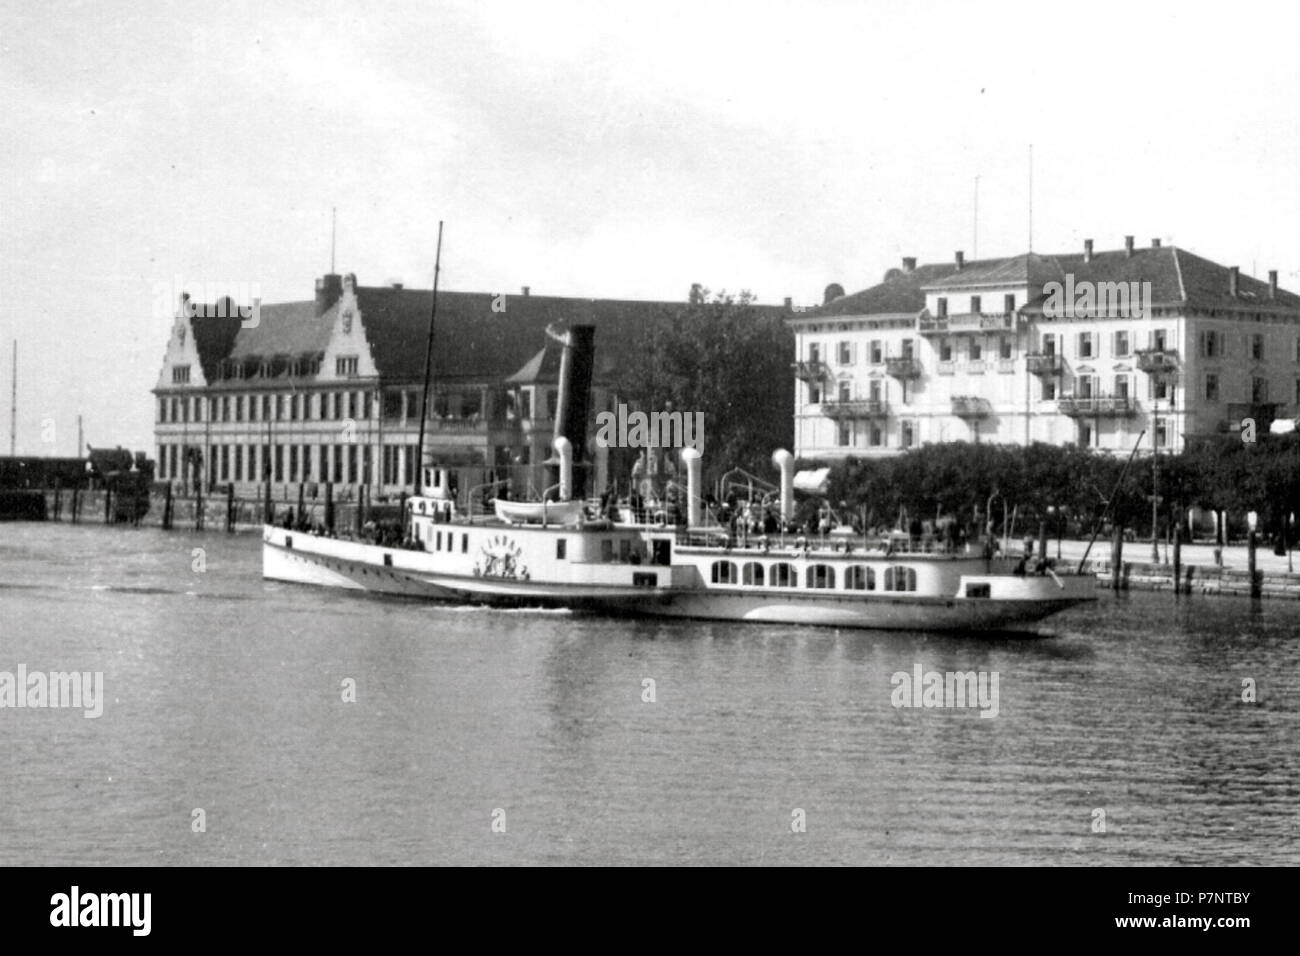 Deutsch: Die Lindau (Schiff, 1905) legt 1906 im Hafen von Lindau (Bodensee) rückwärts an einem Liegeplatz an der Ostmole an. 17 August 2013, 13:45:16 247 Lindau1 Stock Photo